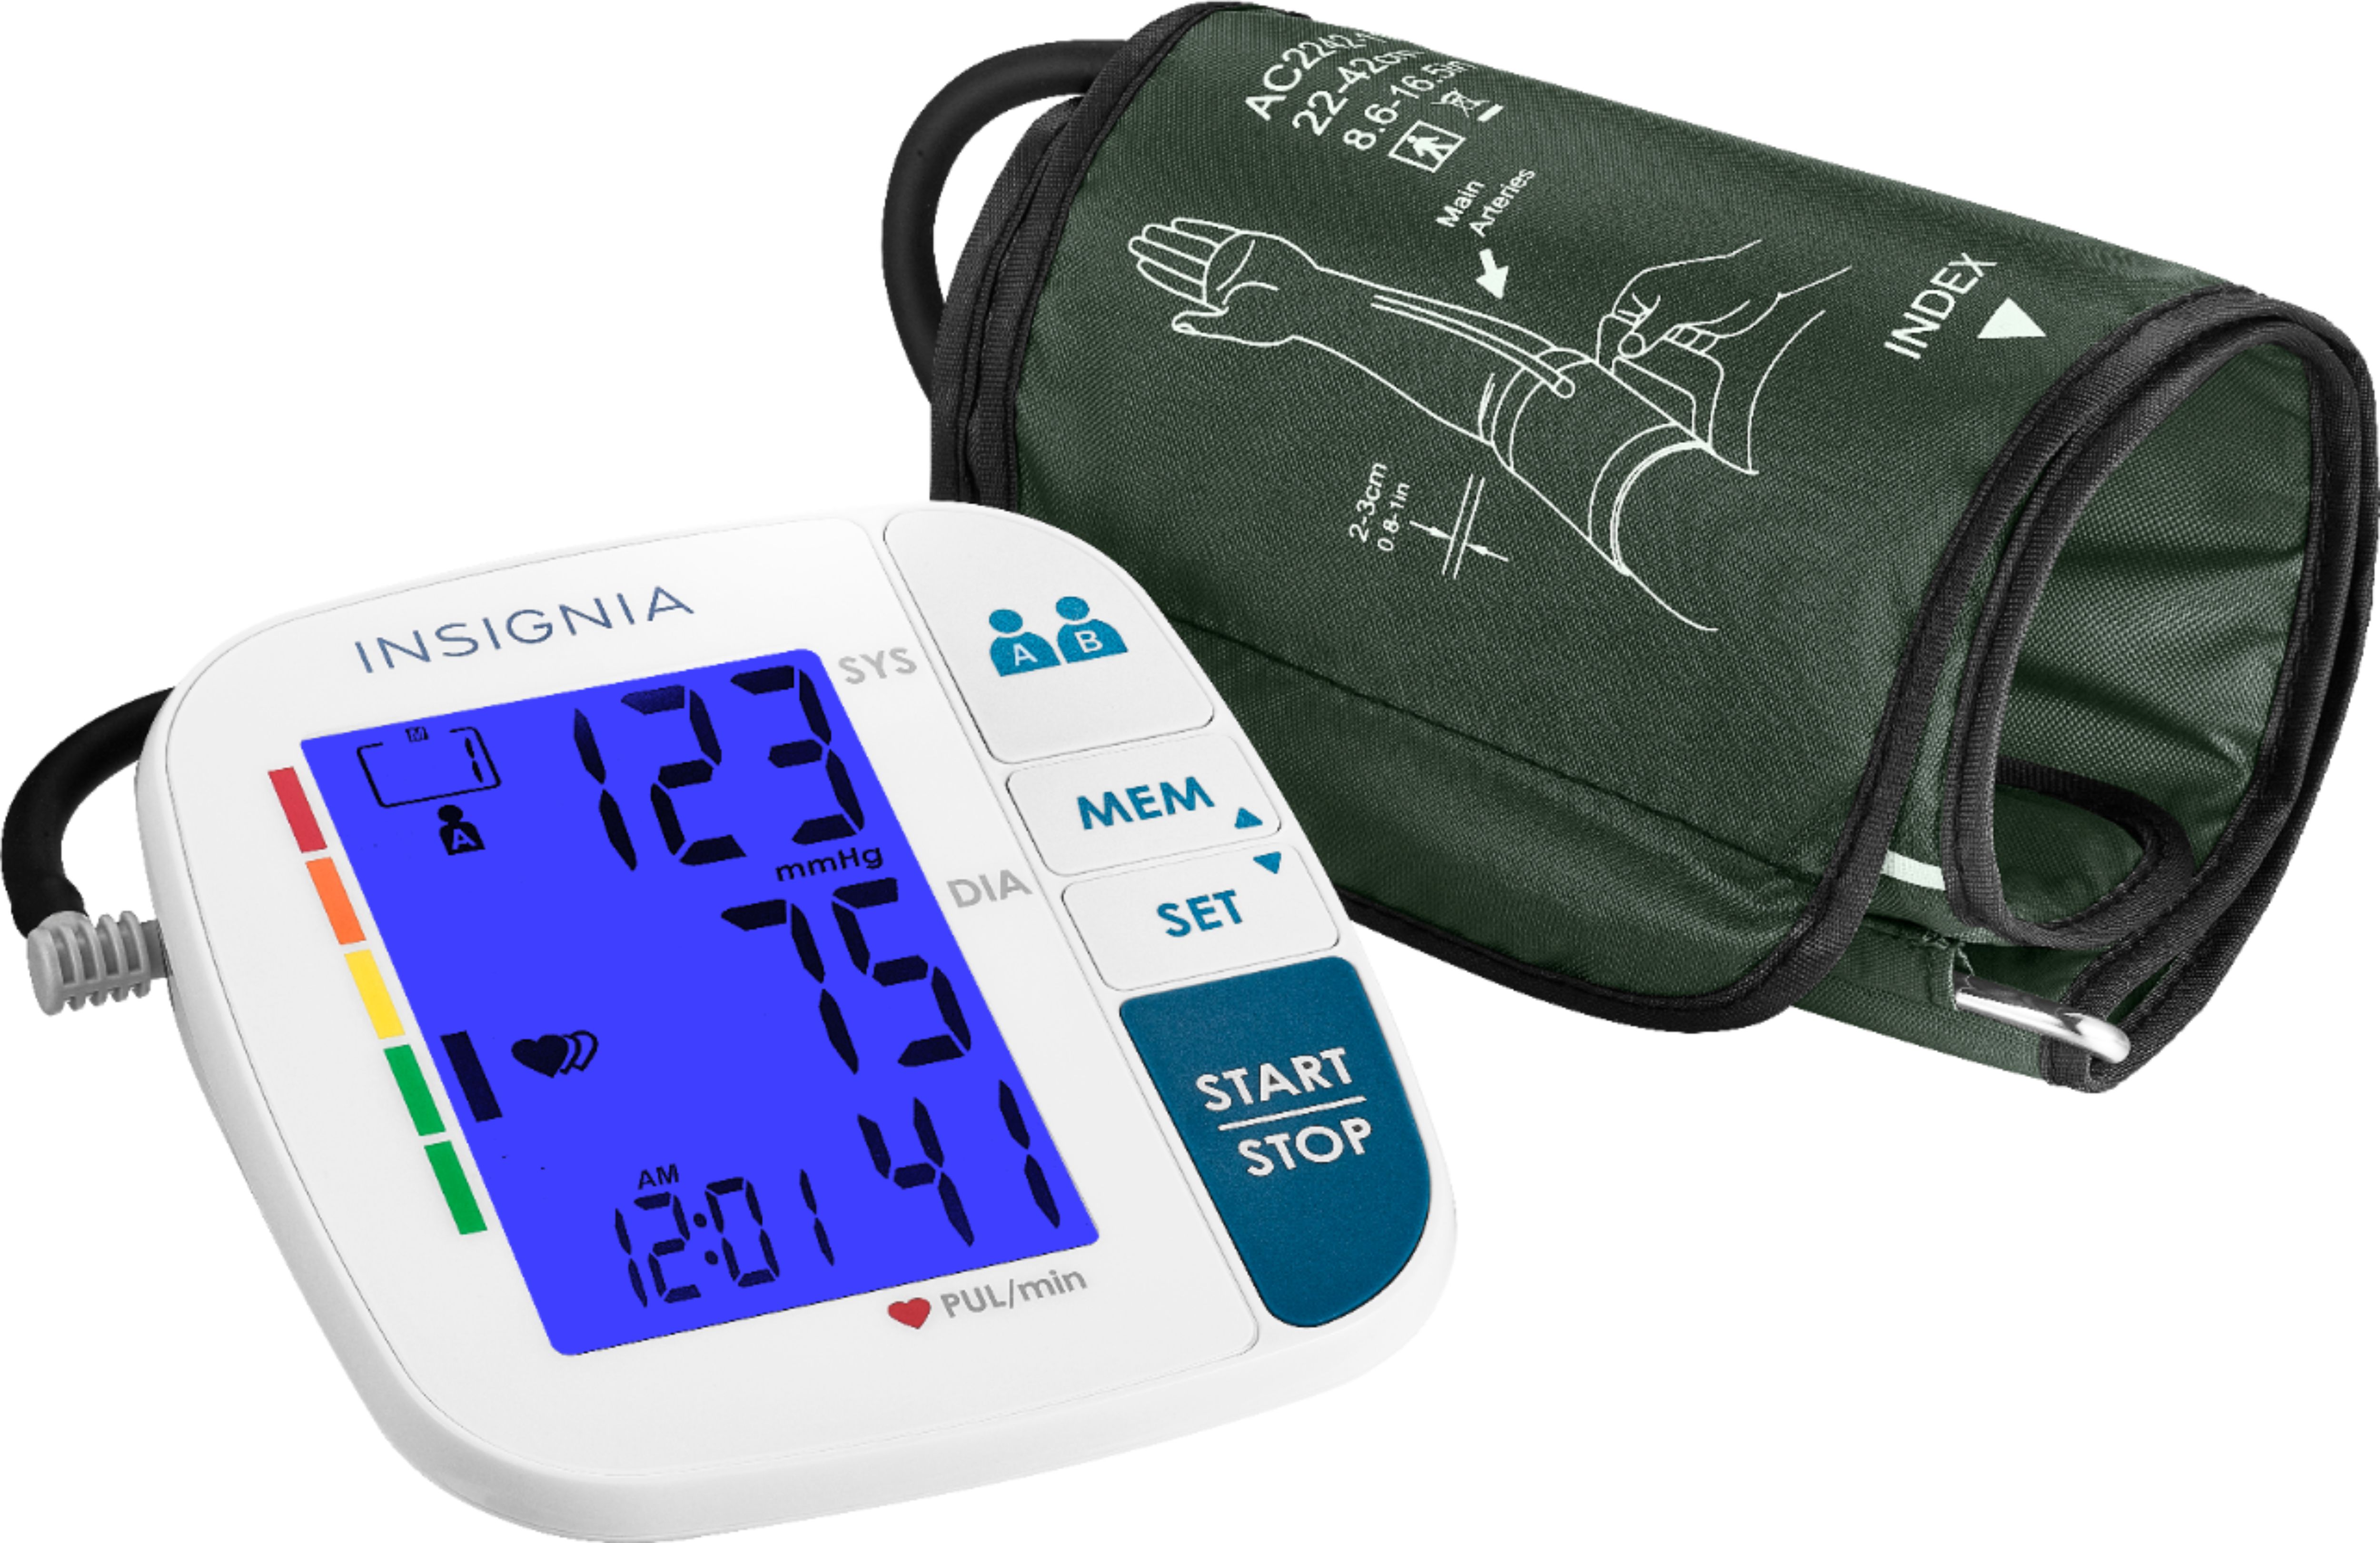 Elite Digital Blood Pressure Monitor Univ Cuff 1Ct